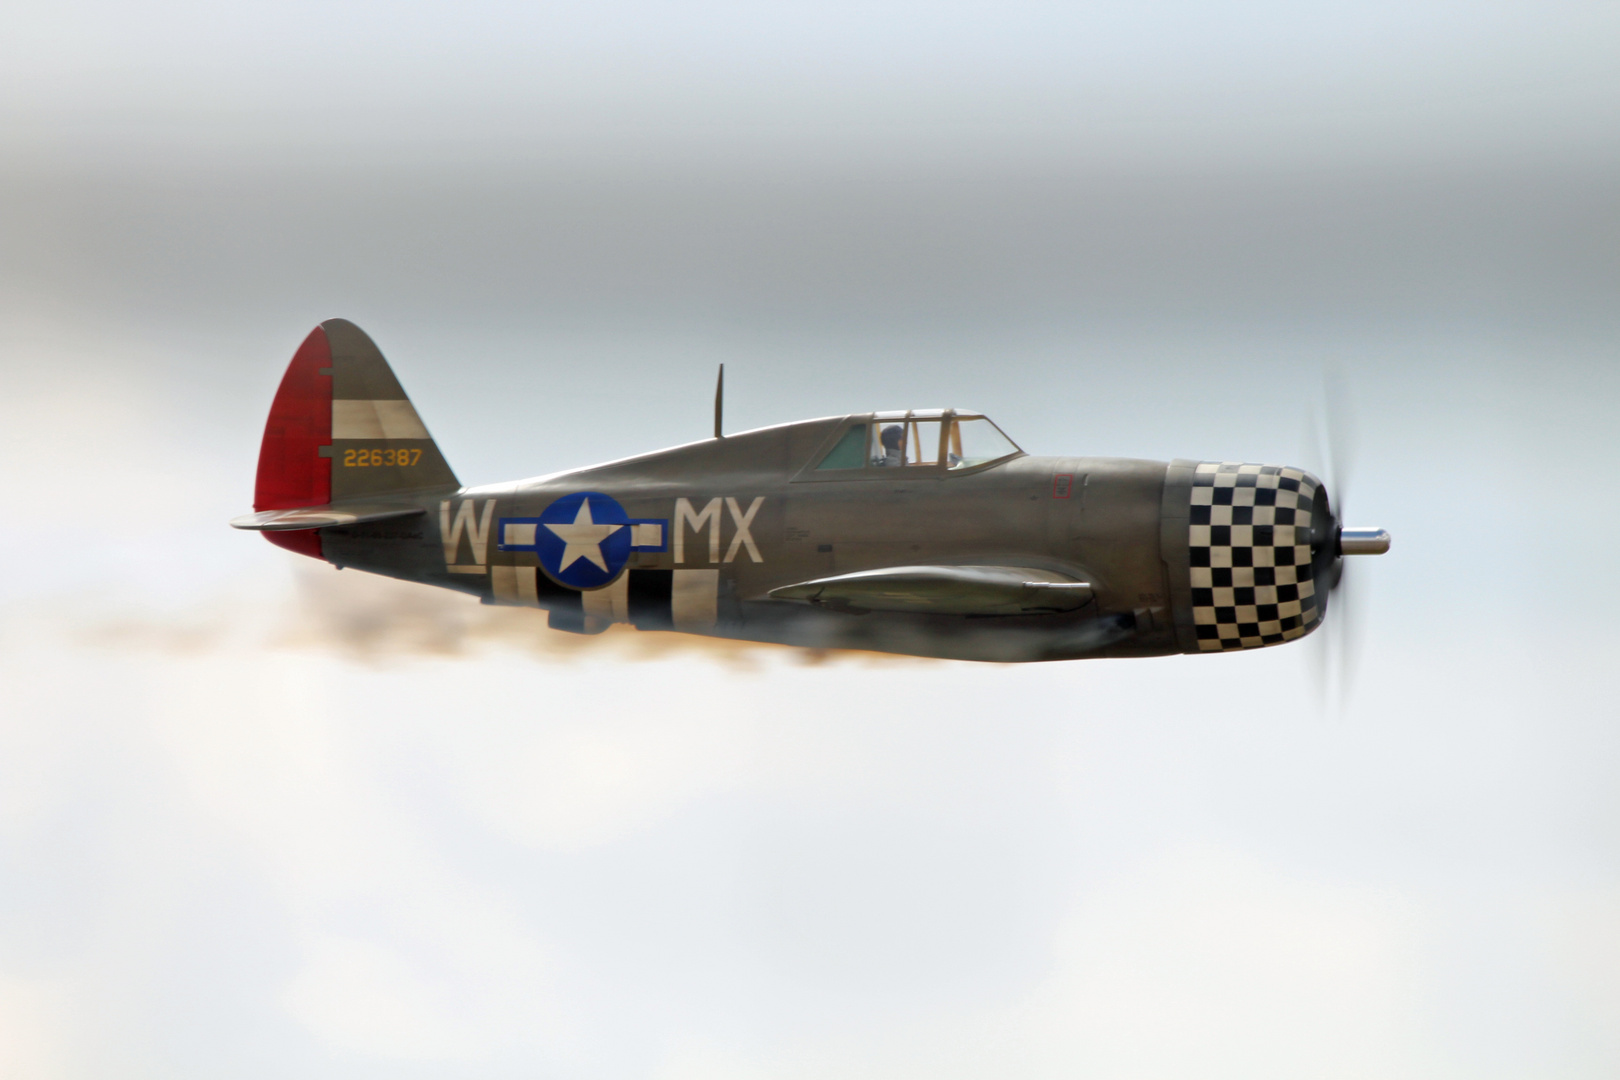 P-47